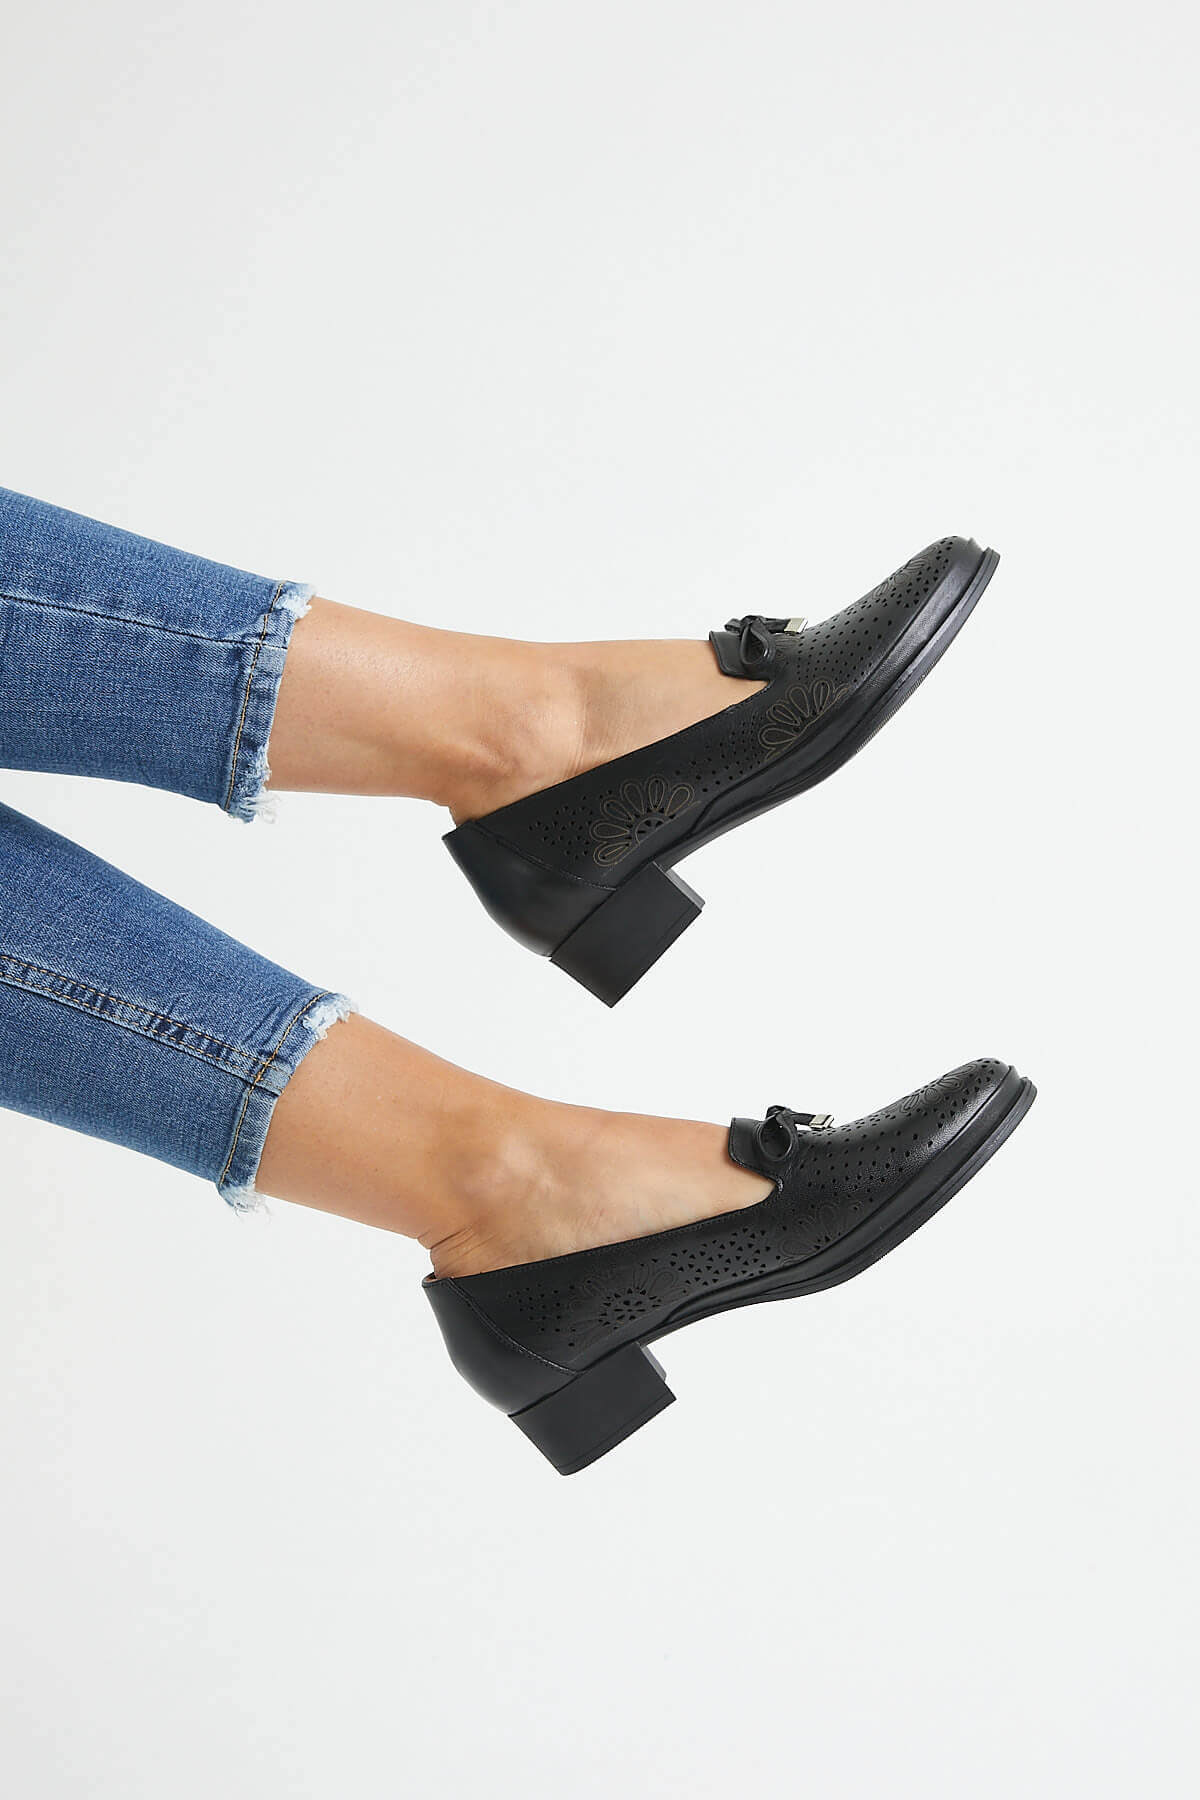 Kadın Topuklu Deri Ayakkabı Siyah 1709214Y - Thumbnail